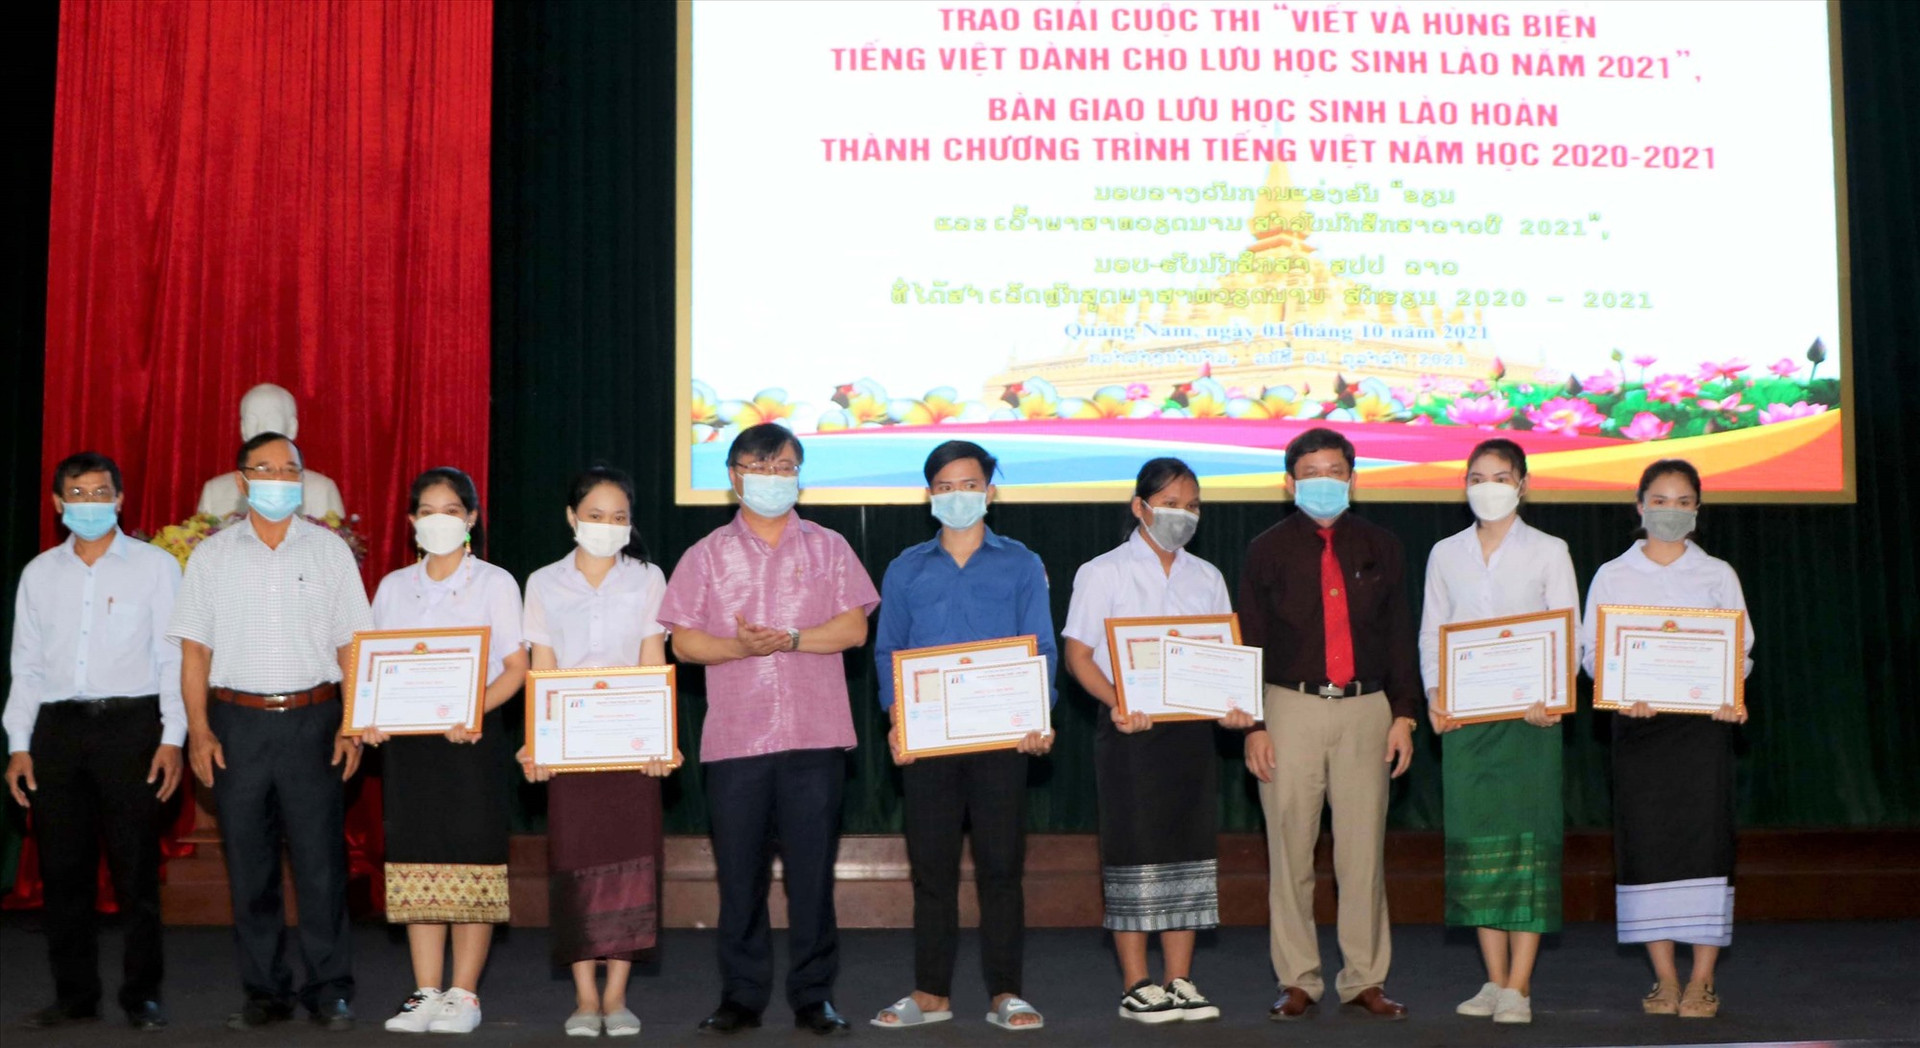 Đại diện Sở Ngoại vụ, Trường Đại học Quảng Nam tặng giấy khen và trao chứng nhận cho sinh viên Lào đoạt giải tại cuộc thi. Ảnh: N.T.C.C